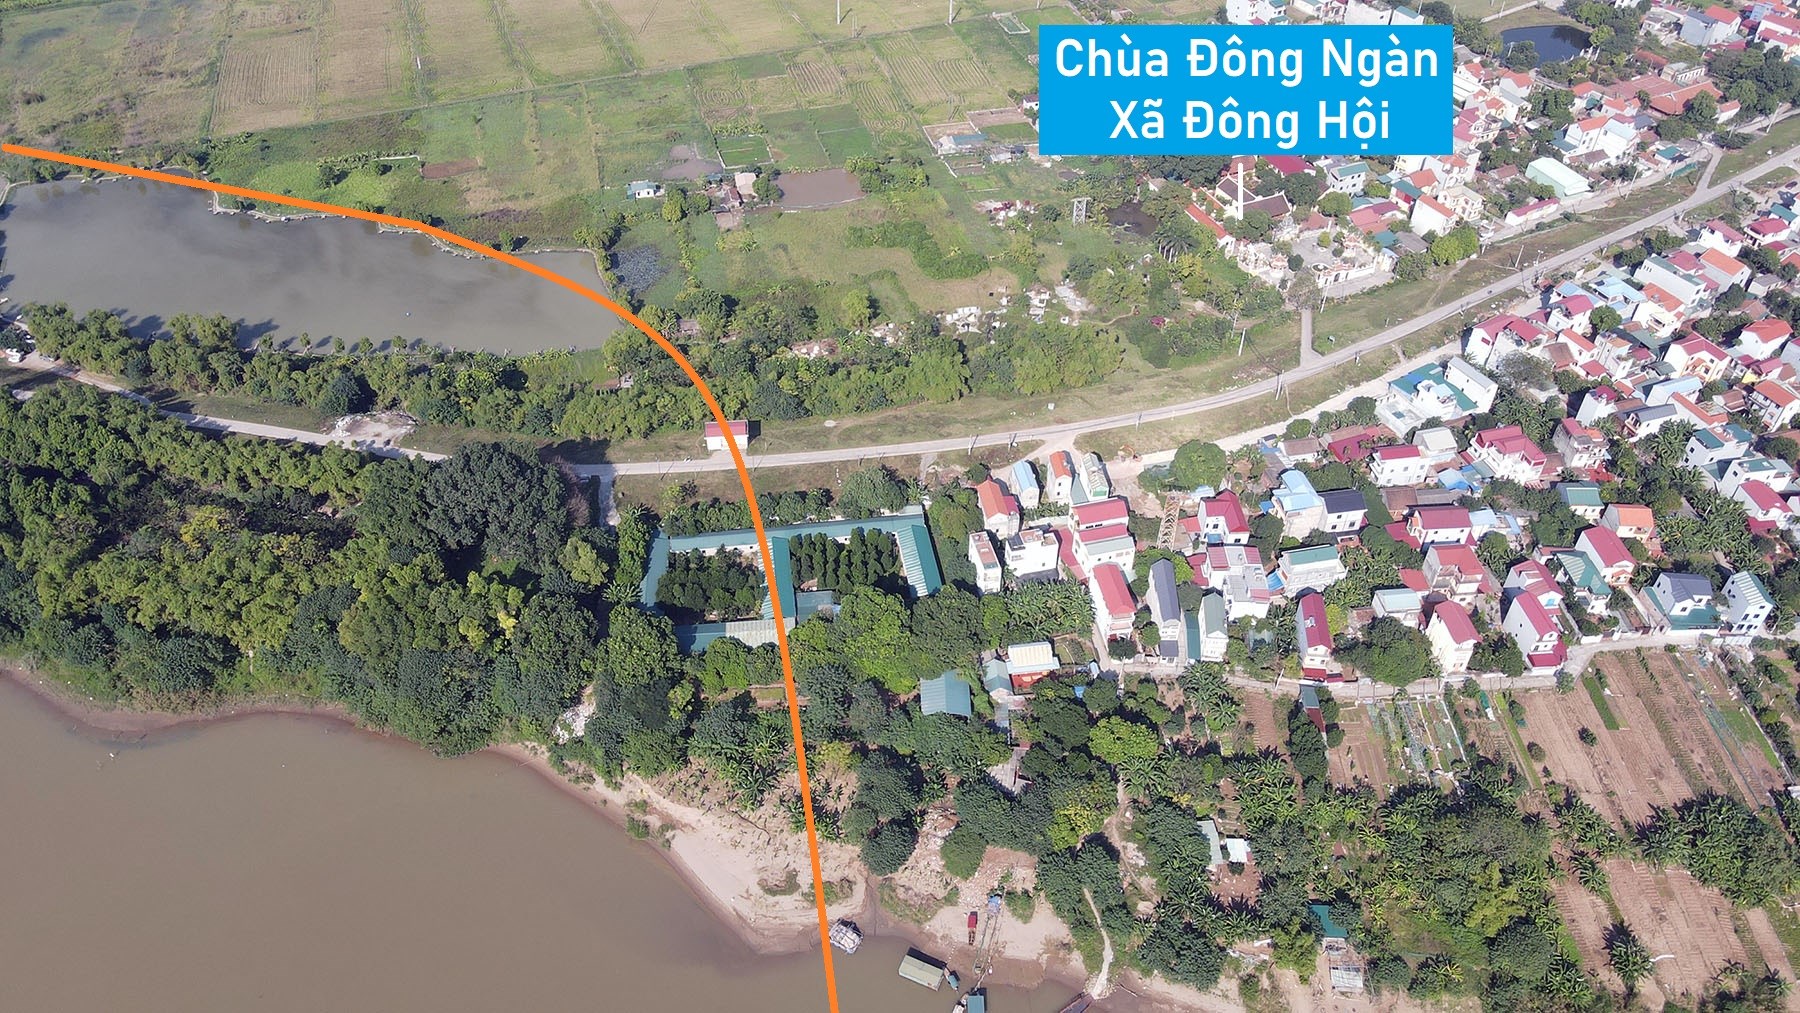 Toàn cảnh vị trí quy hoạch xây cầu Bắc Cầu nối Đông Anh - Long Biên, Hà Nội